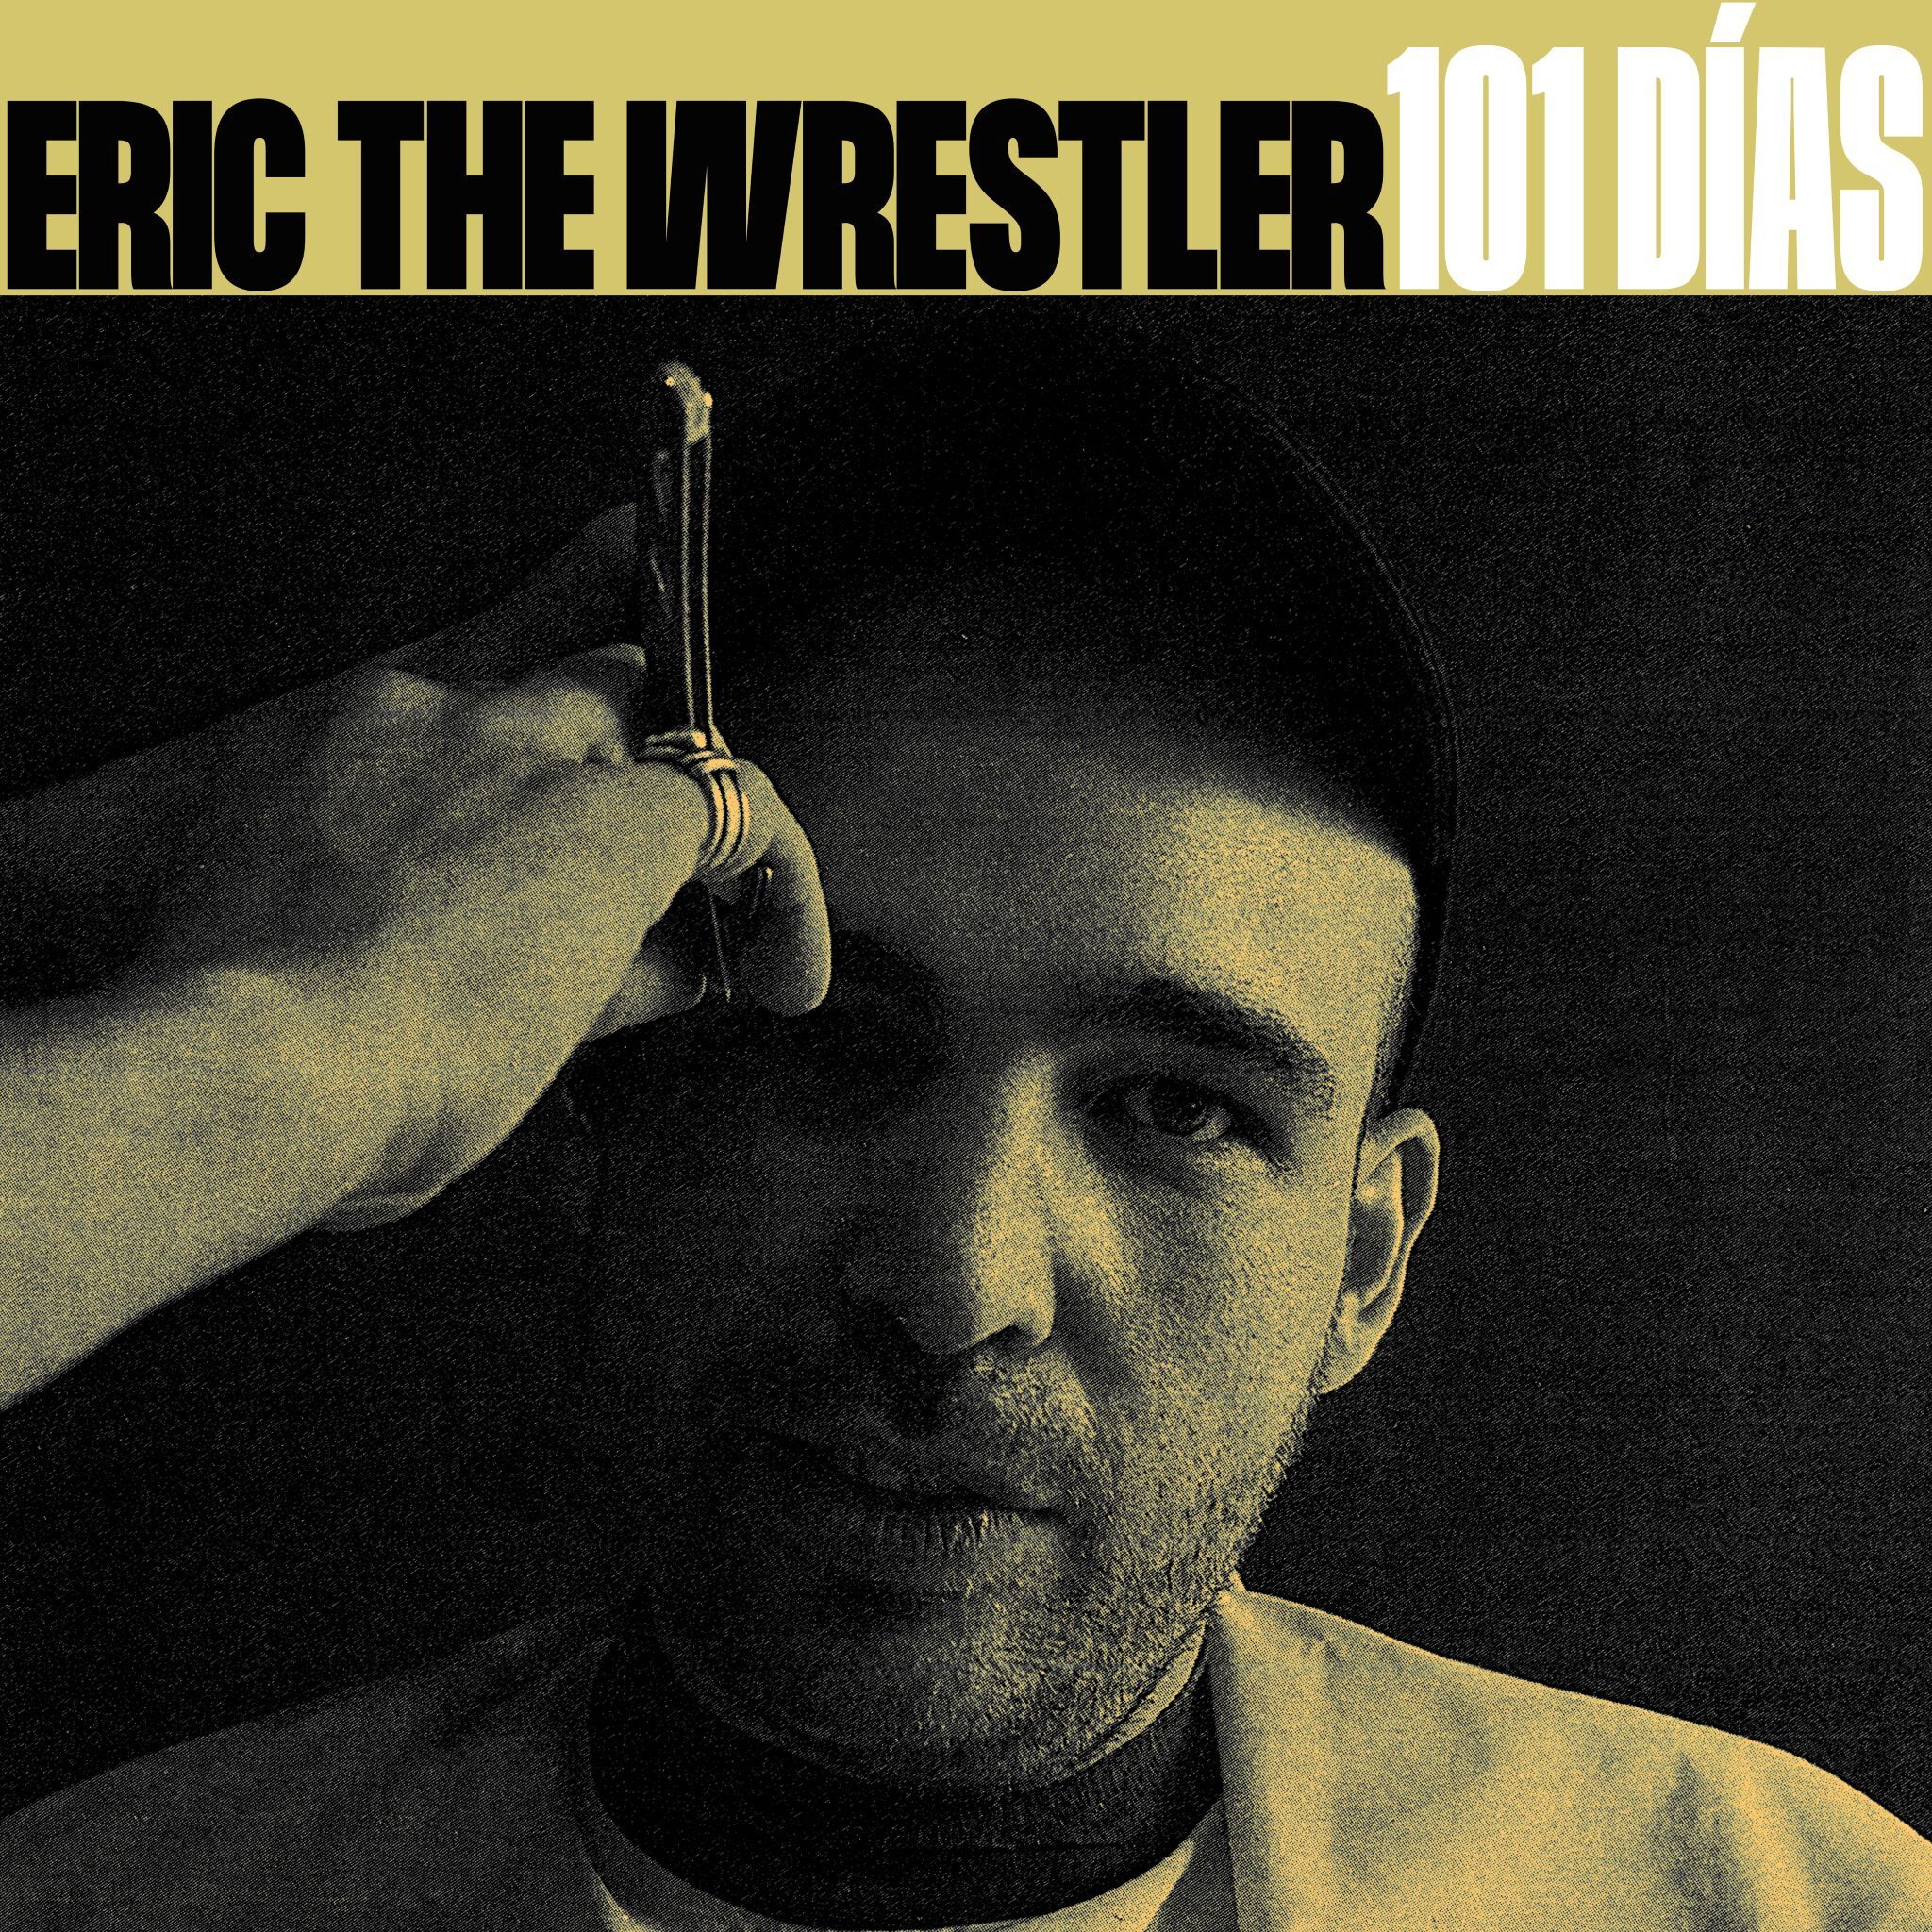 Eric The Wrestler presenta ‘101 días’, una crónica de barrio sin clichés